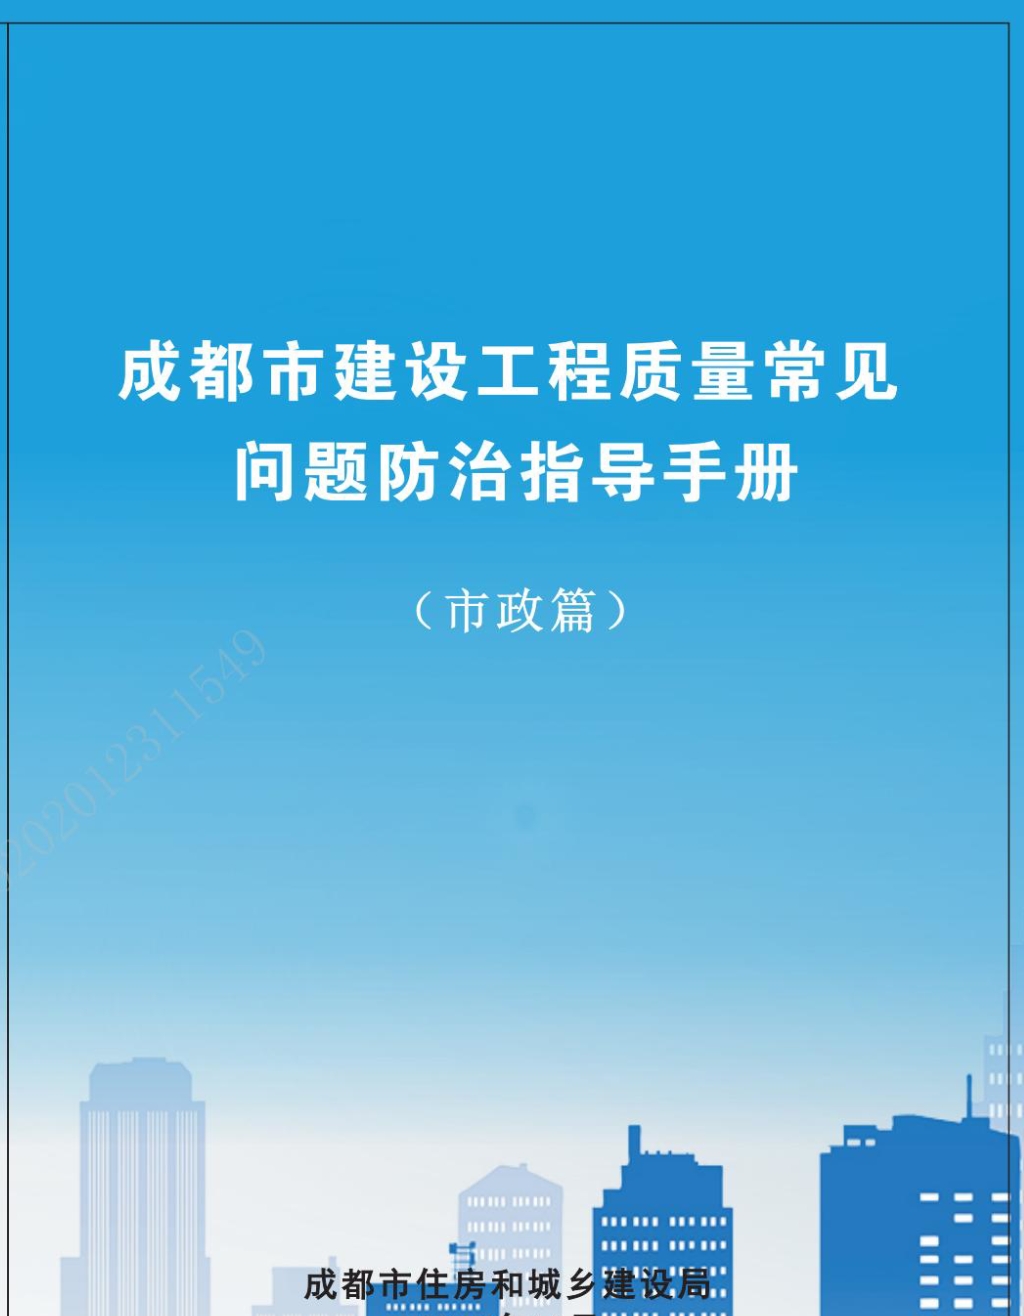 成都市建设工程质量常见问题防治指导手册（市政篇）_00.jpg